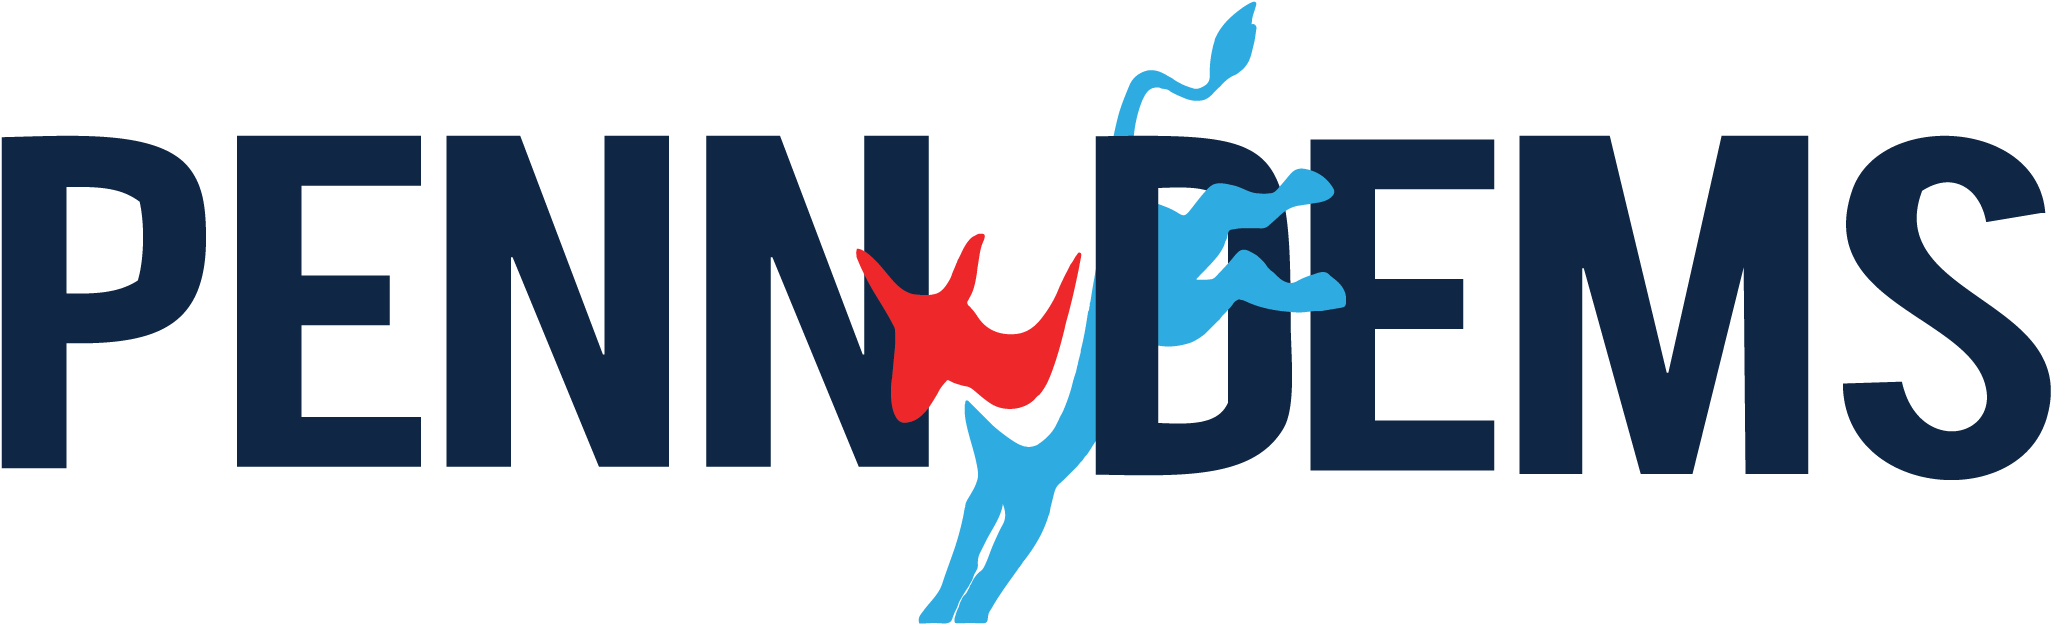 Pennsylvania Democrats Logo PNG